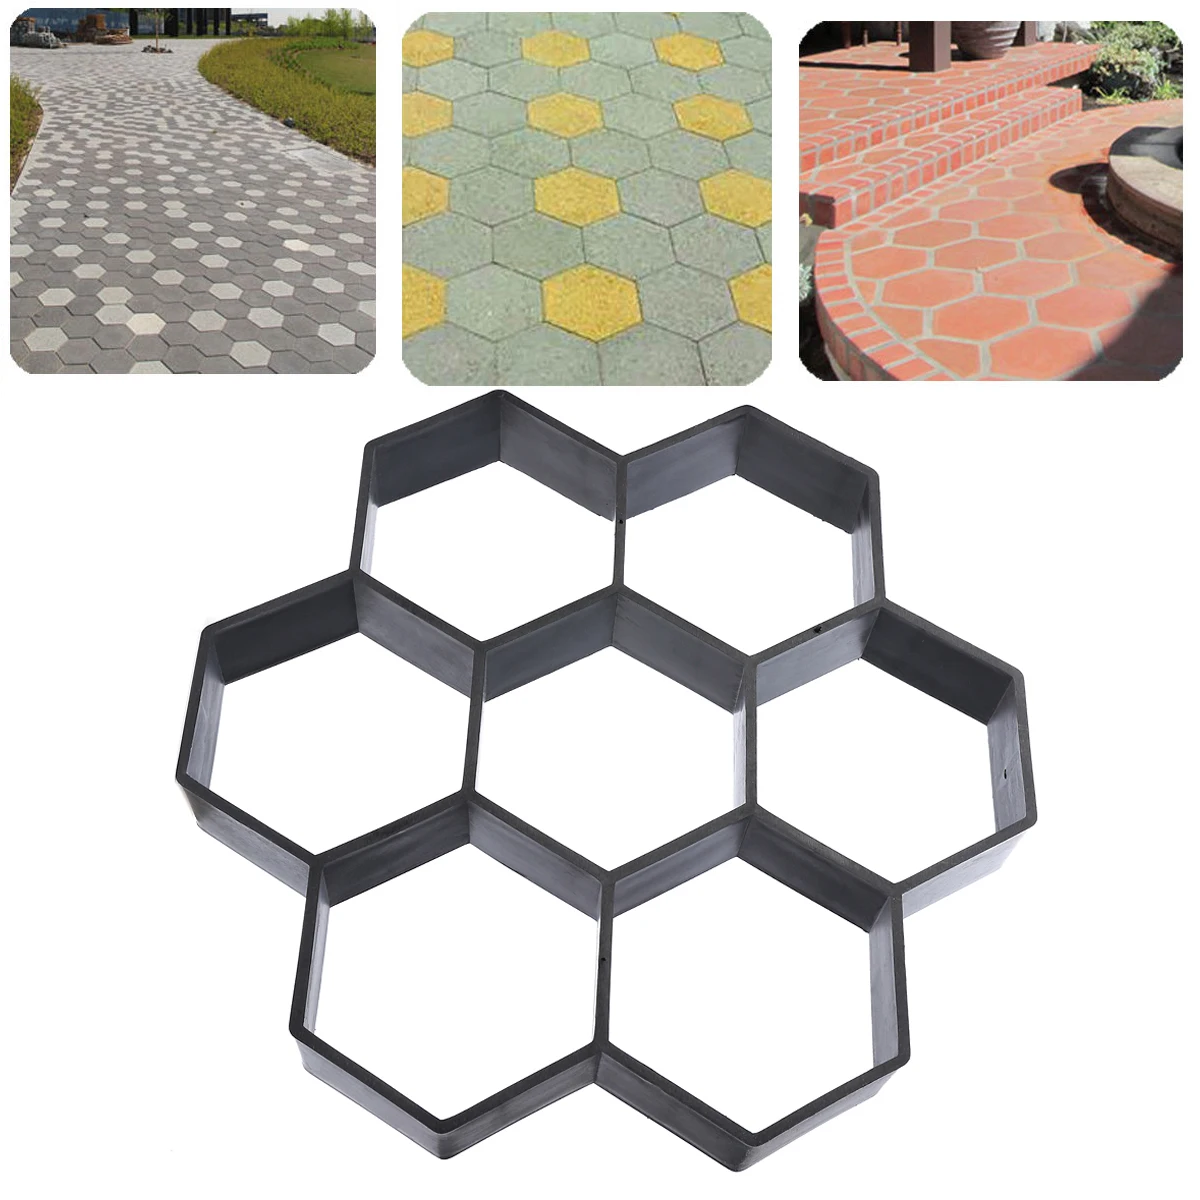 Новая подъездная форма для производства брусчатки бетонных шаговых дорожек тротуарная форма асфальтоукладчик пластик для бетона DIY каменных дорожек